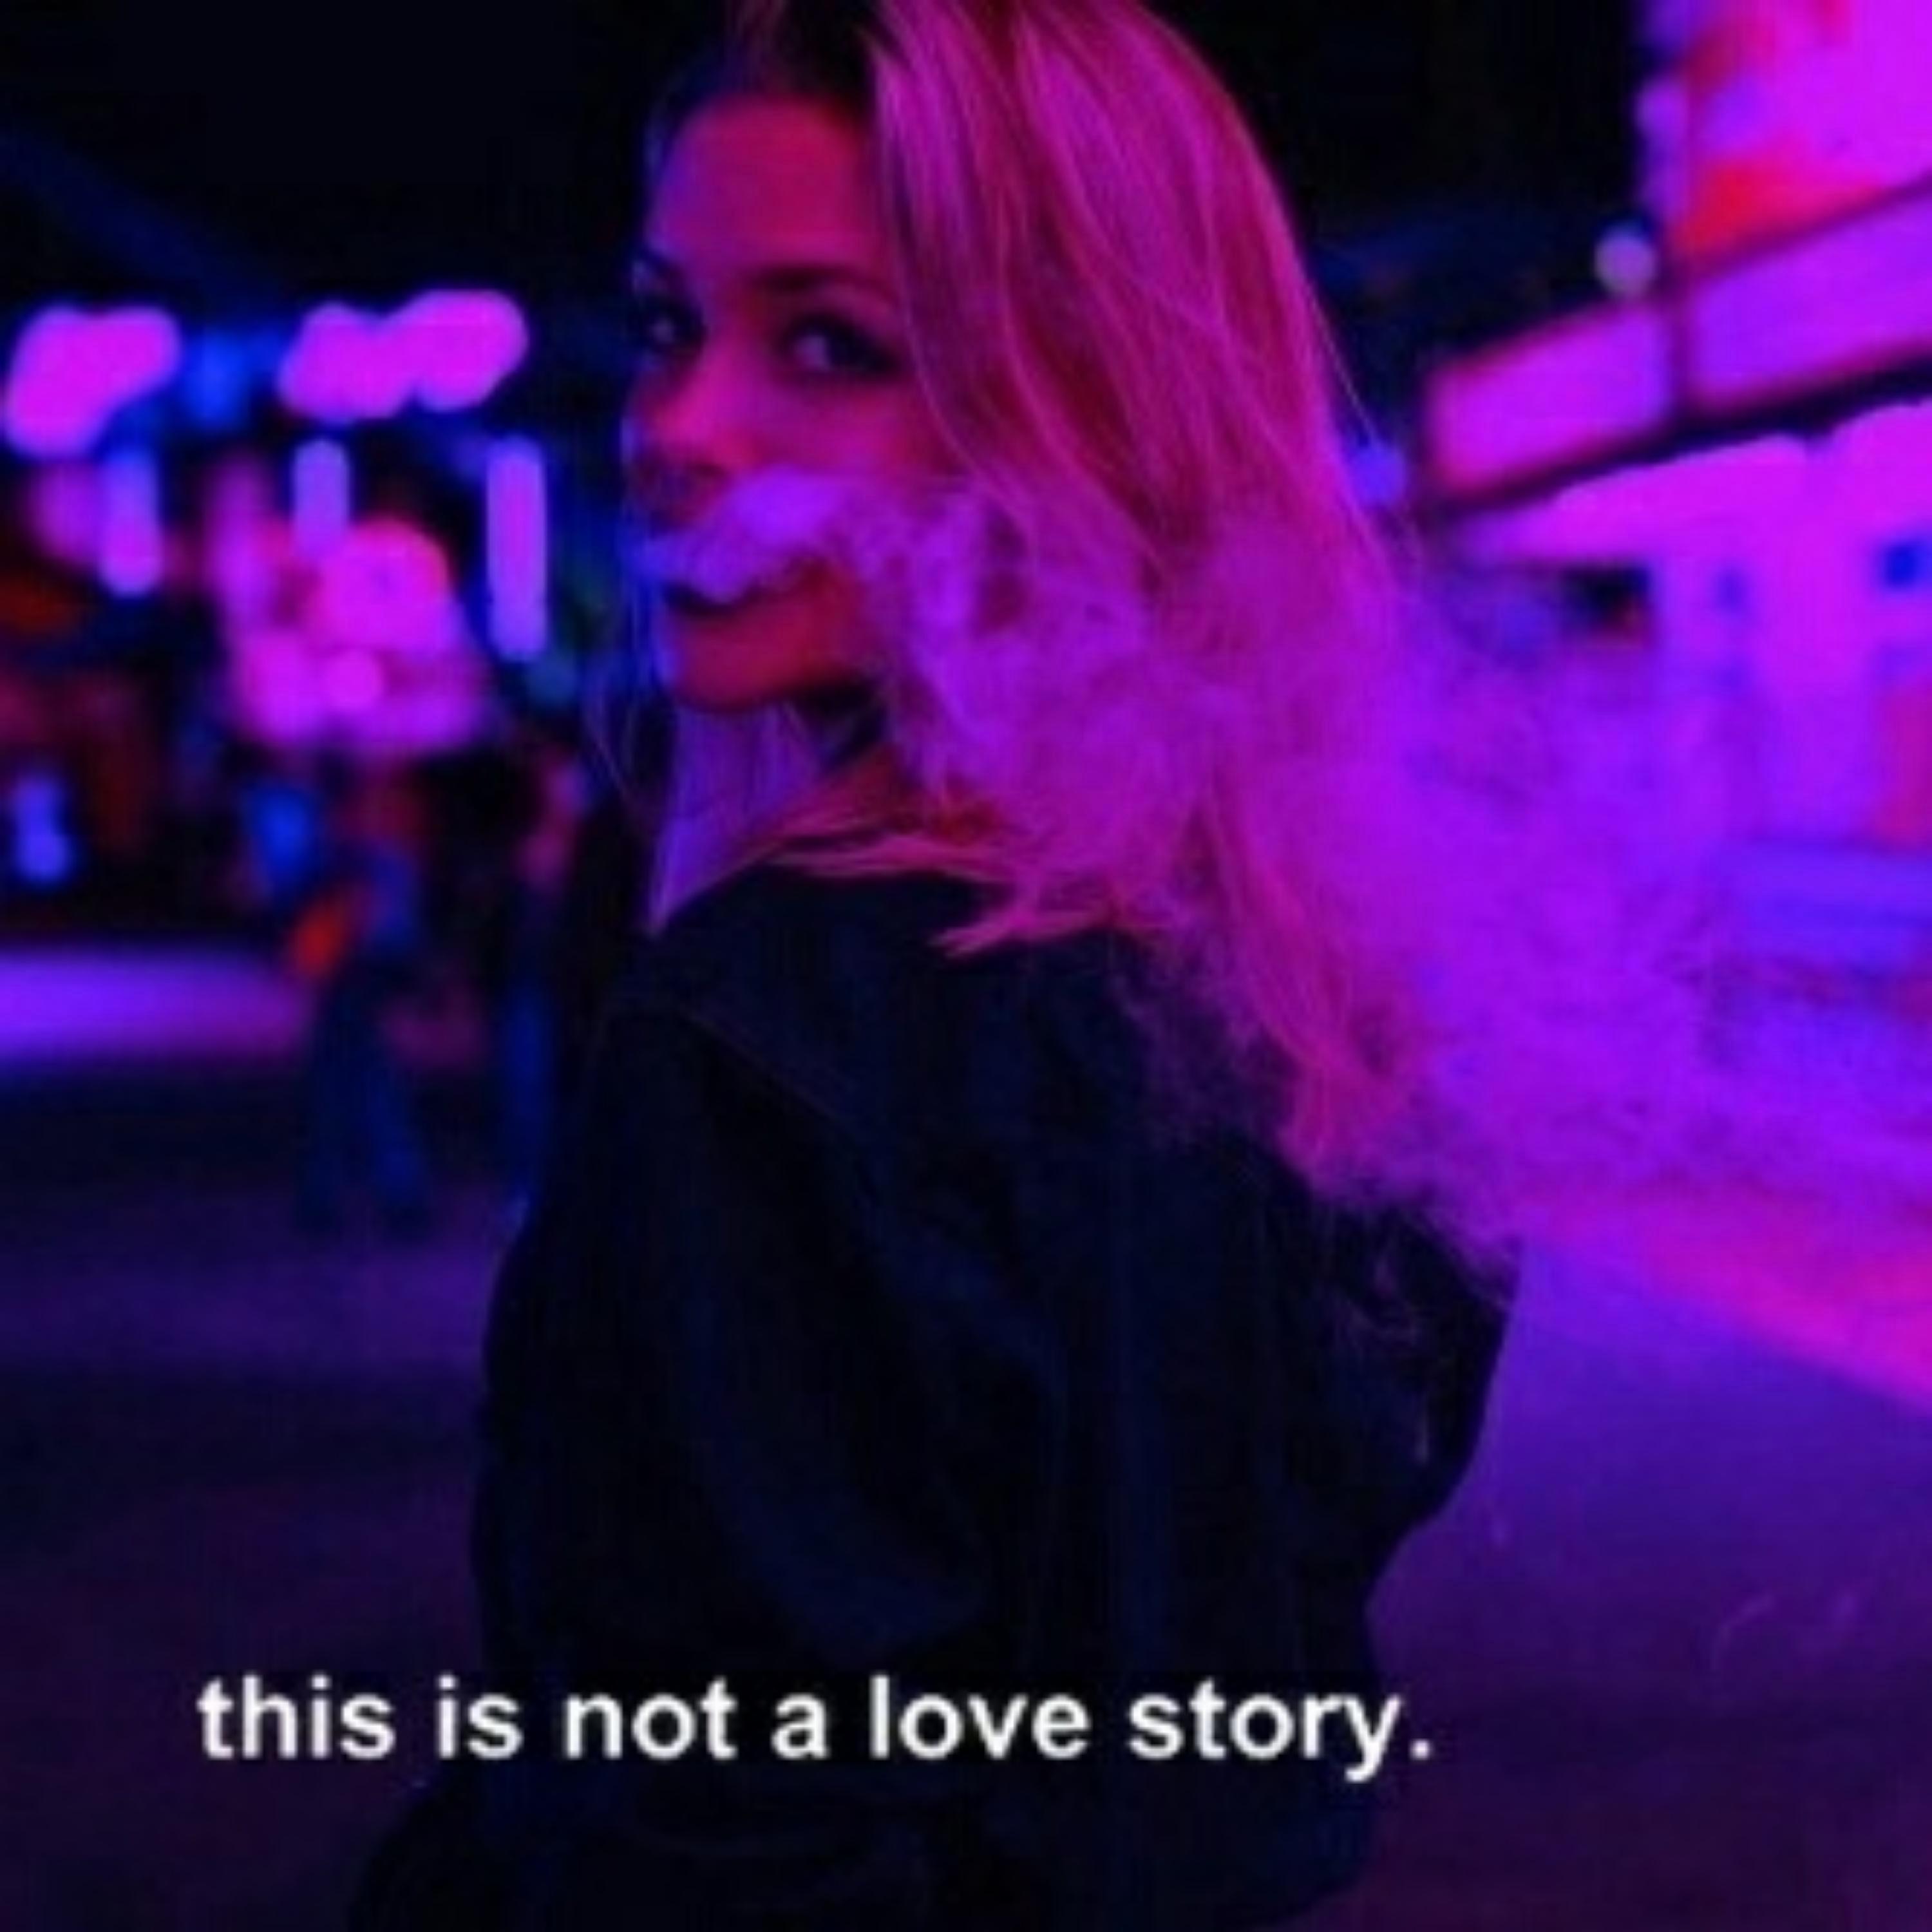 xaRio - Not A Love Story (feat. Rook1e)